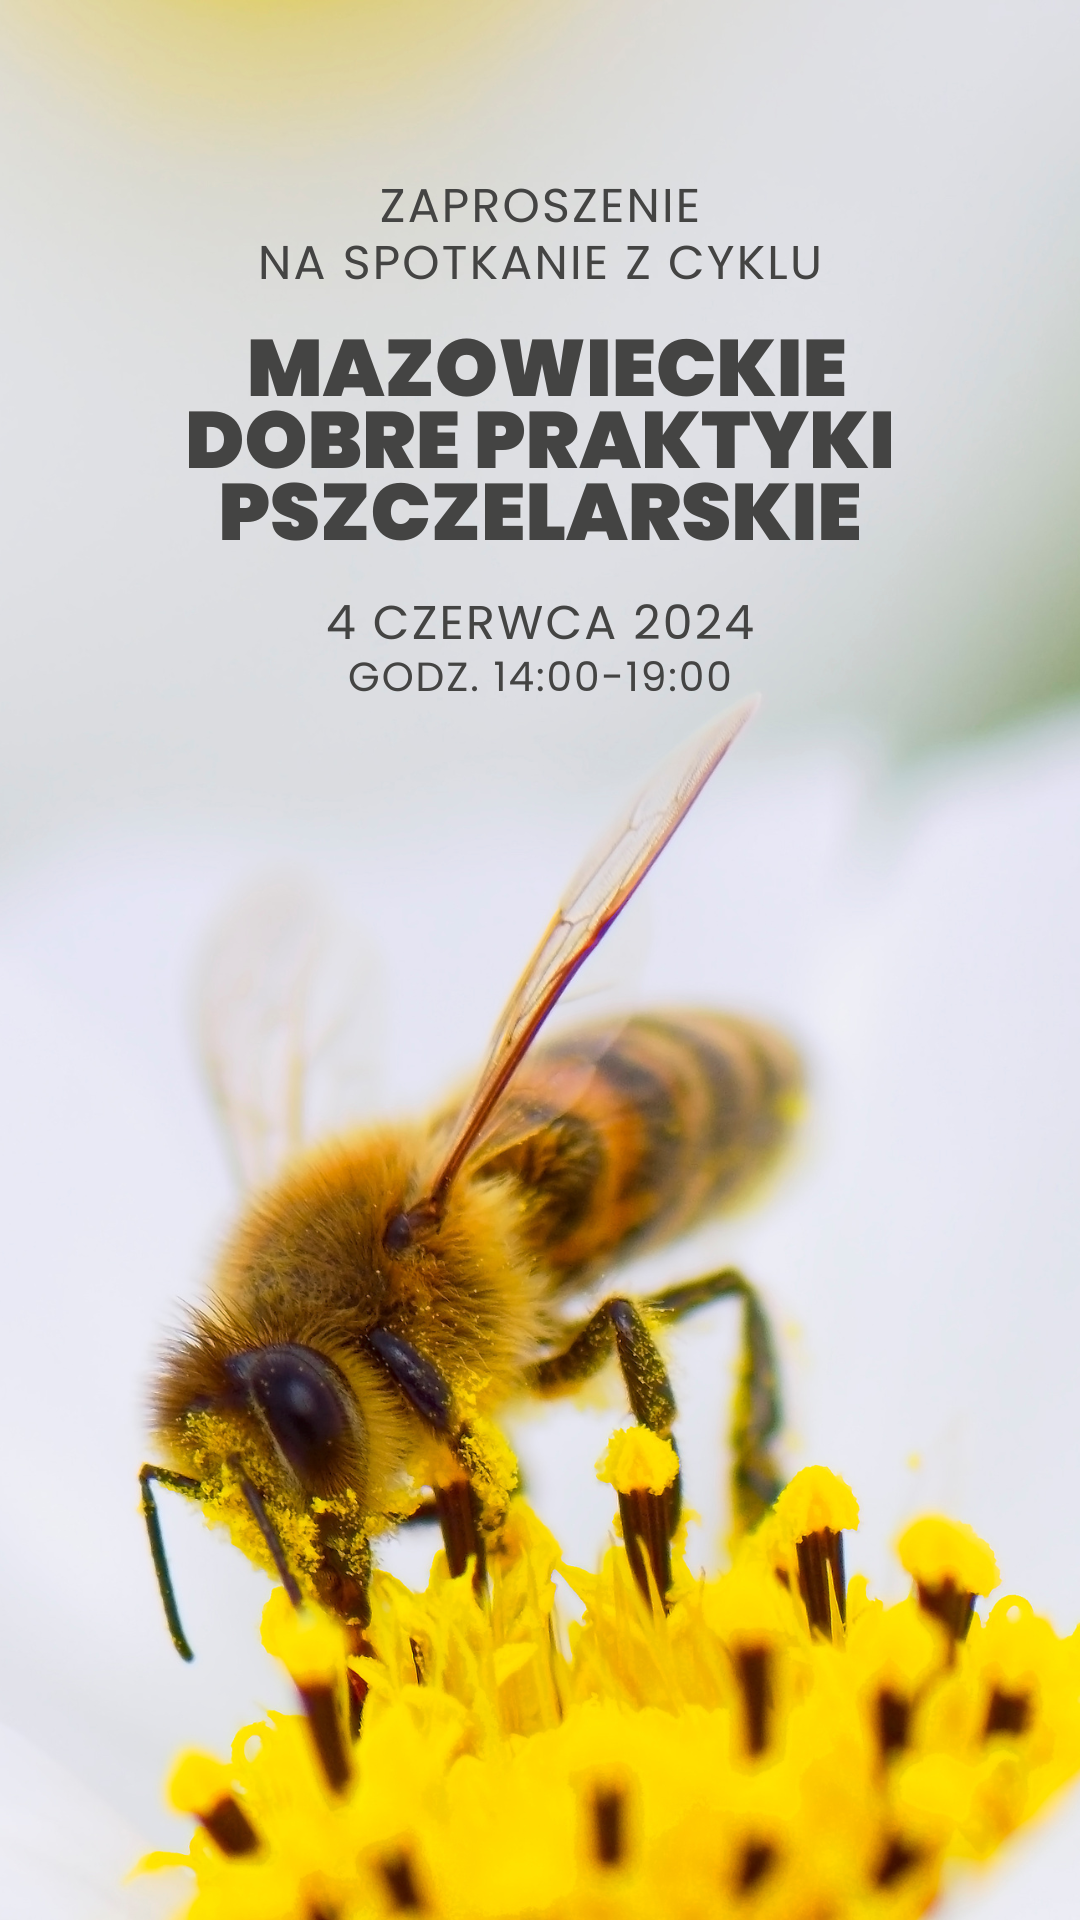 Mazowieckie Dobre Praktyki Pszczelarskie 2024